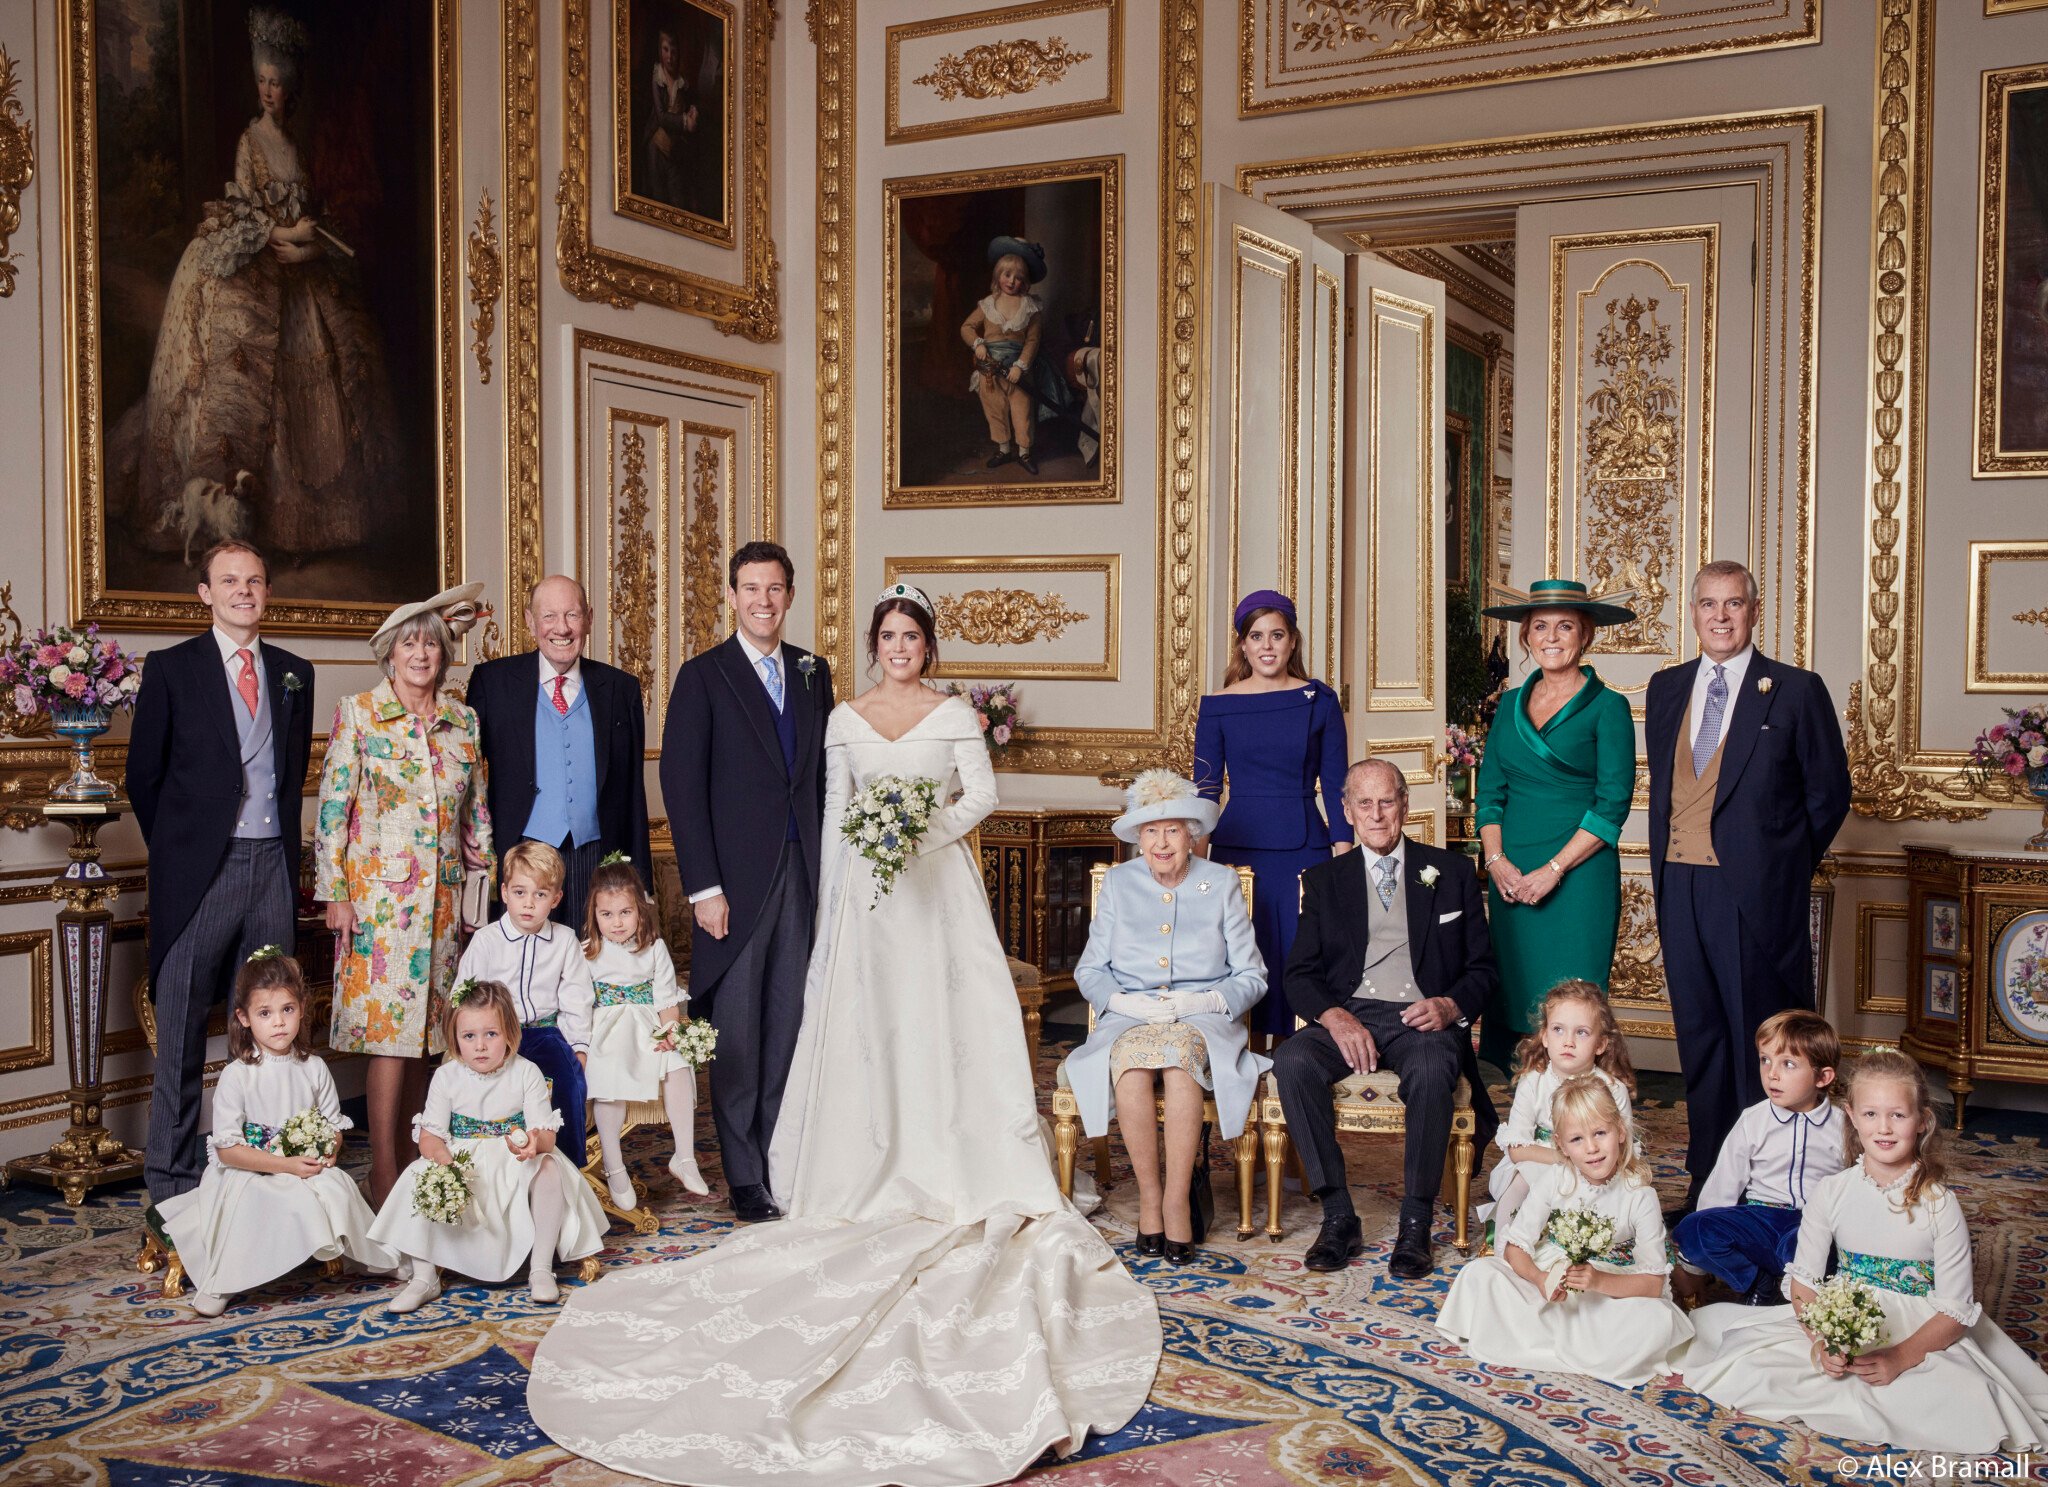 Forbes Royal: Vdává se další královnina vnučka. Proč svět tak fascinují britské královské svatby?